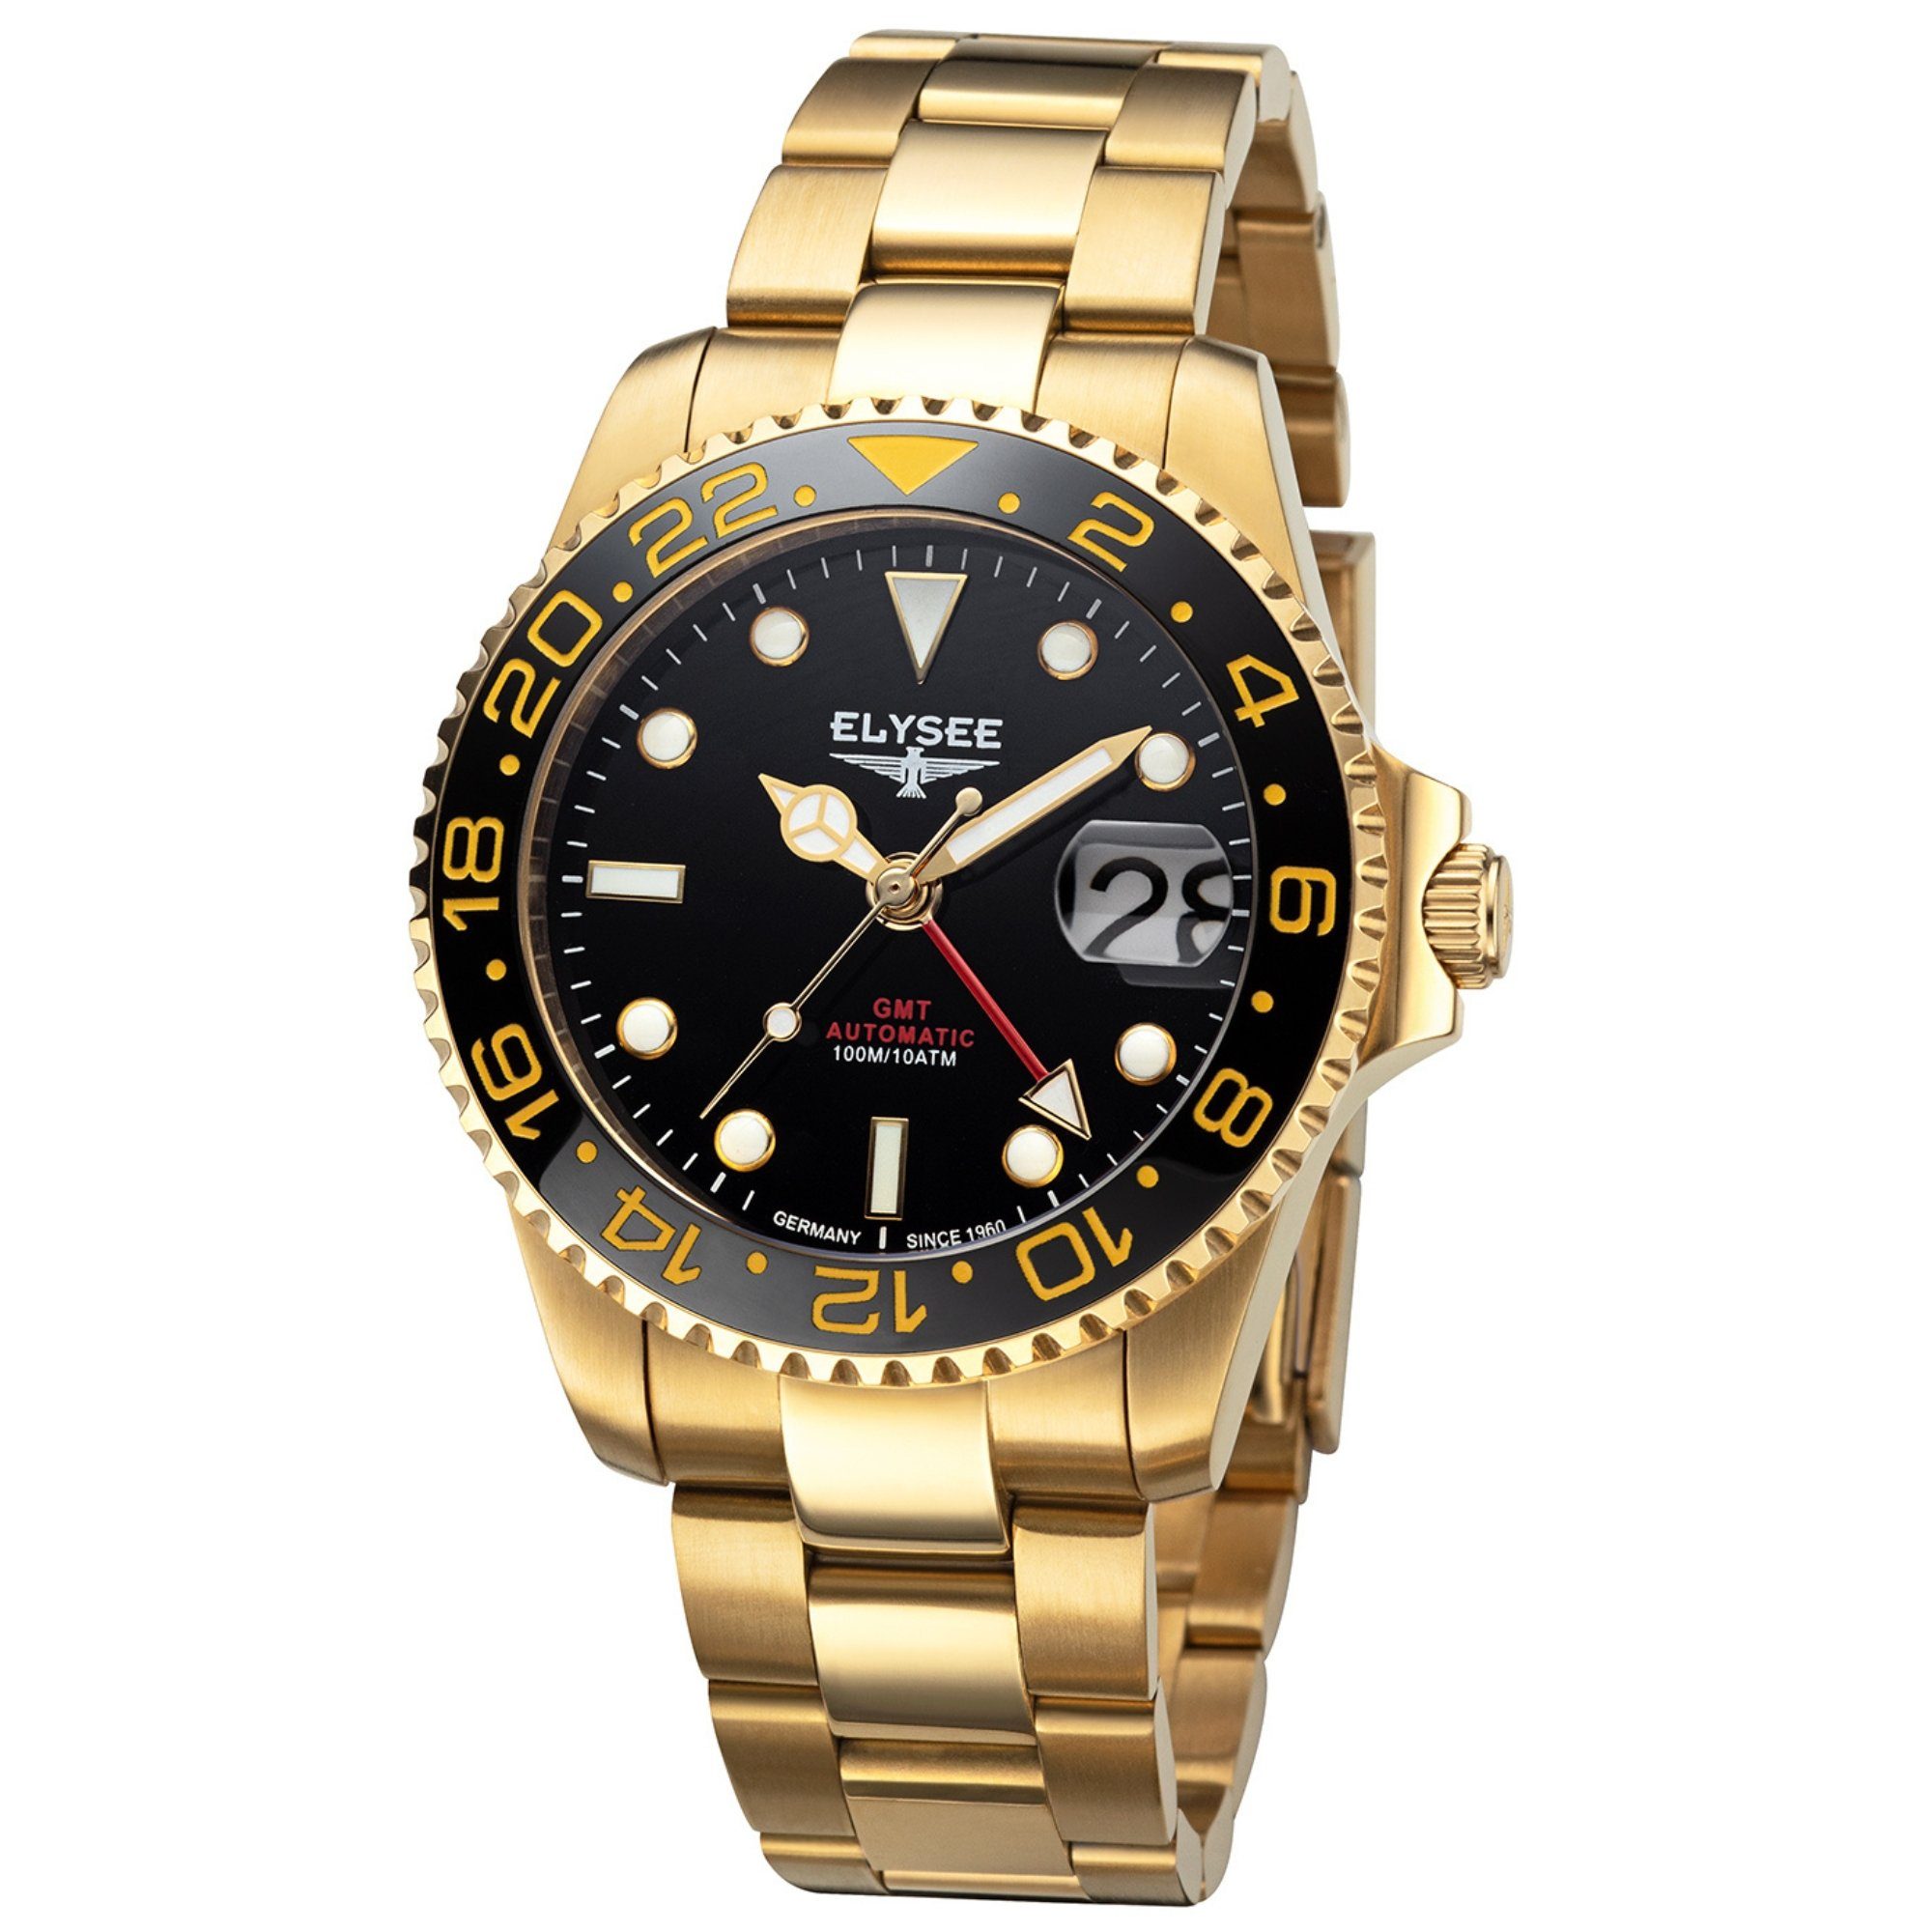 Elysee Automatikuhr GMT AUTOMATIC Herrenuhr 40,5mm Edelstahl 4-Zeiger-Uhr silber, ideal auch als Geschenk gold